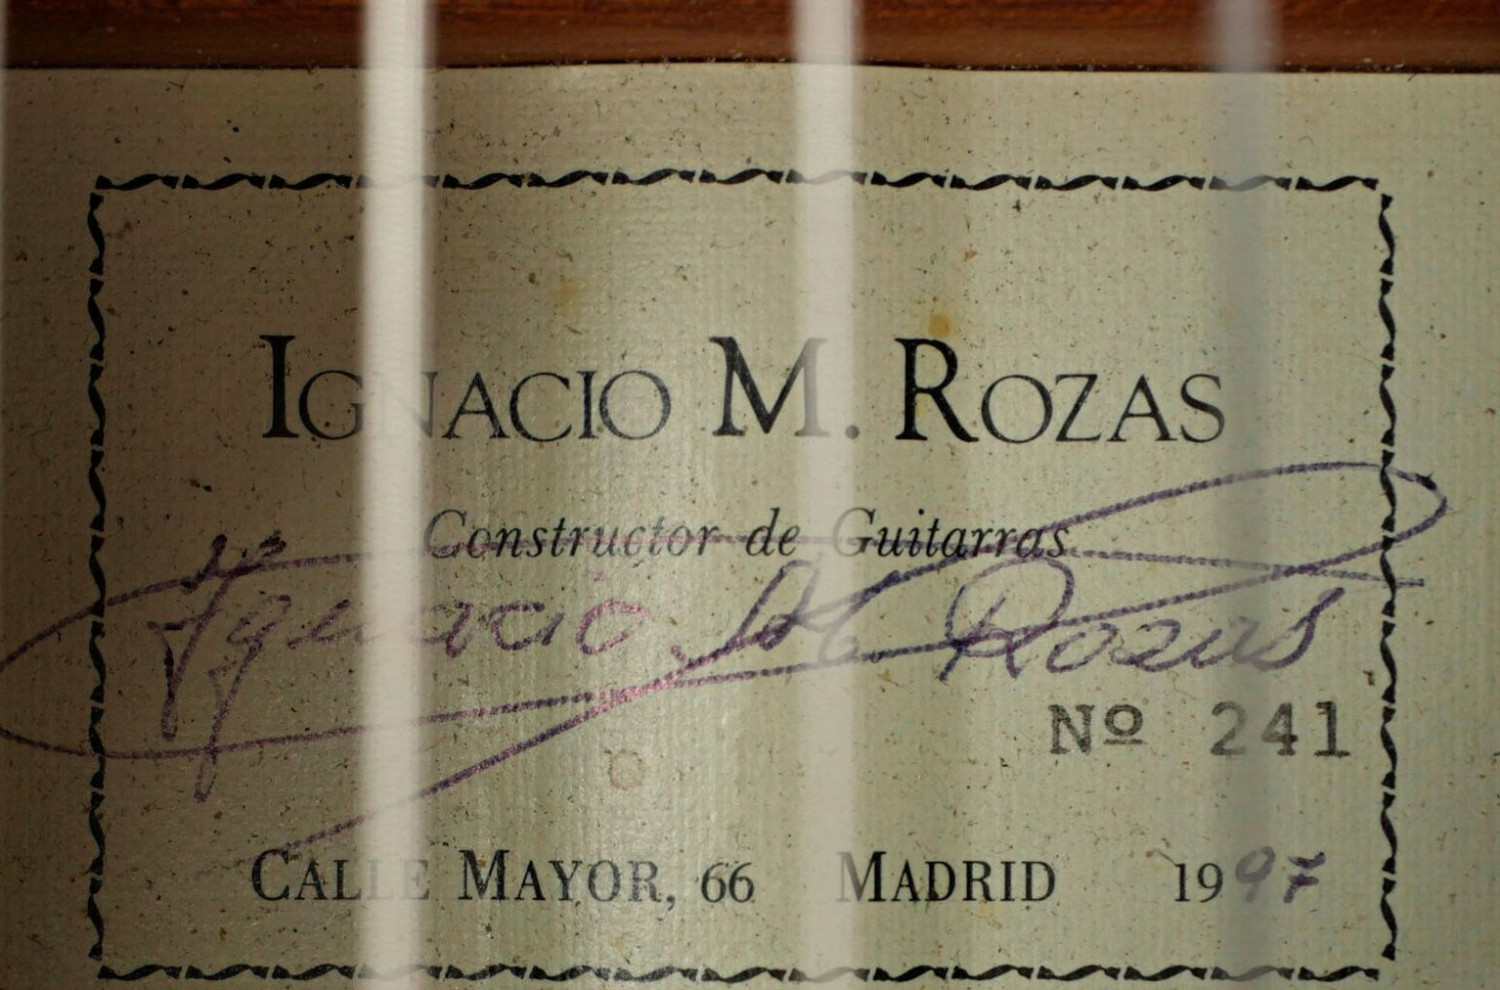 Ignacio M. Rozas SOLD